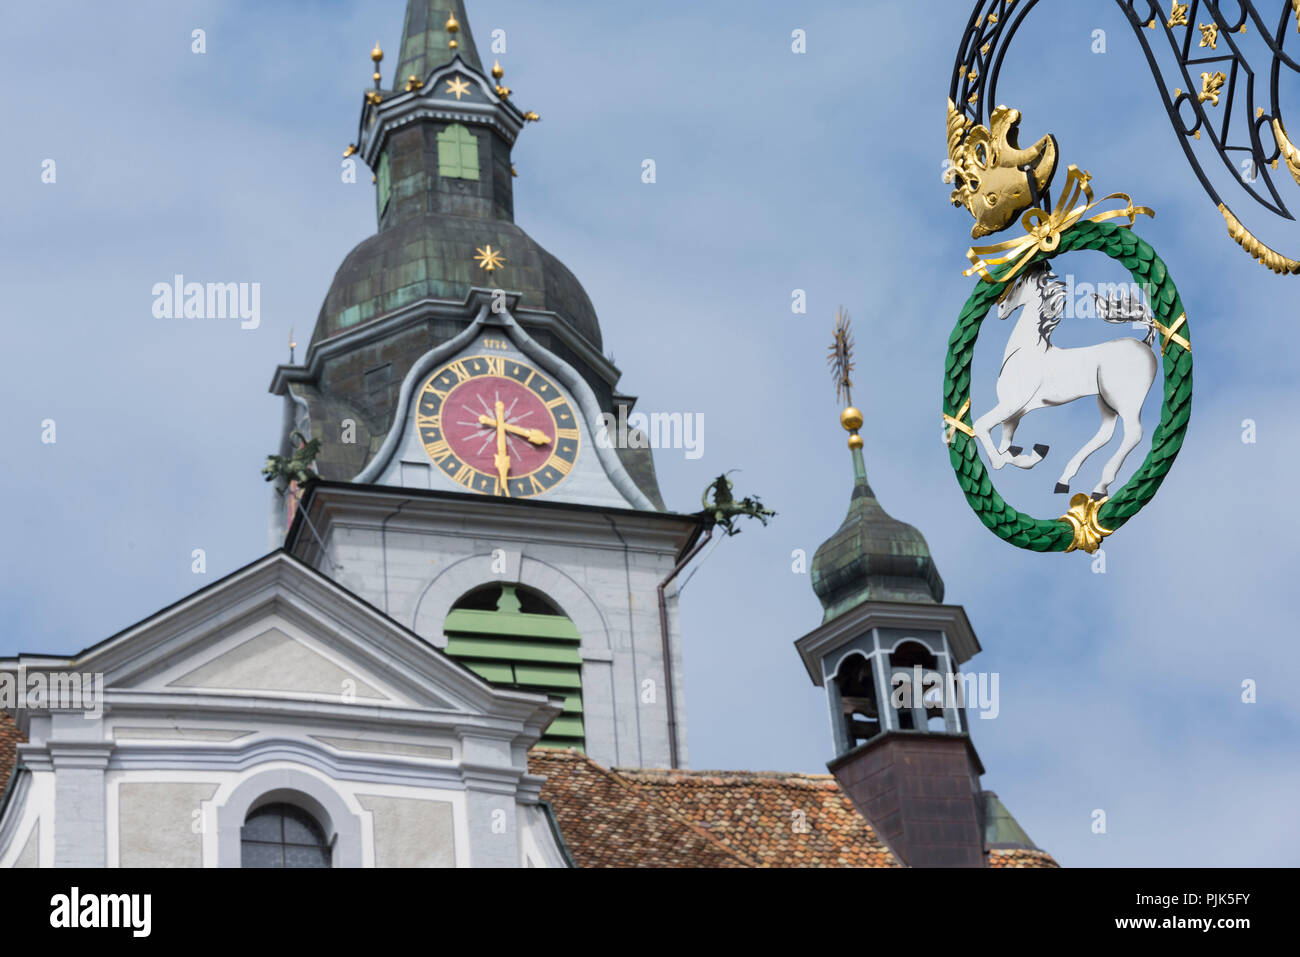 Hauptplatz mit Pfarrkirche St. Martin, Schwyz, Kanton Schwyz, Schweiz Stockfoto